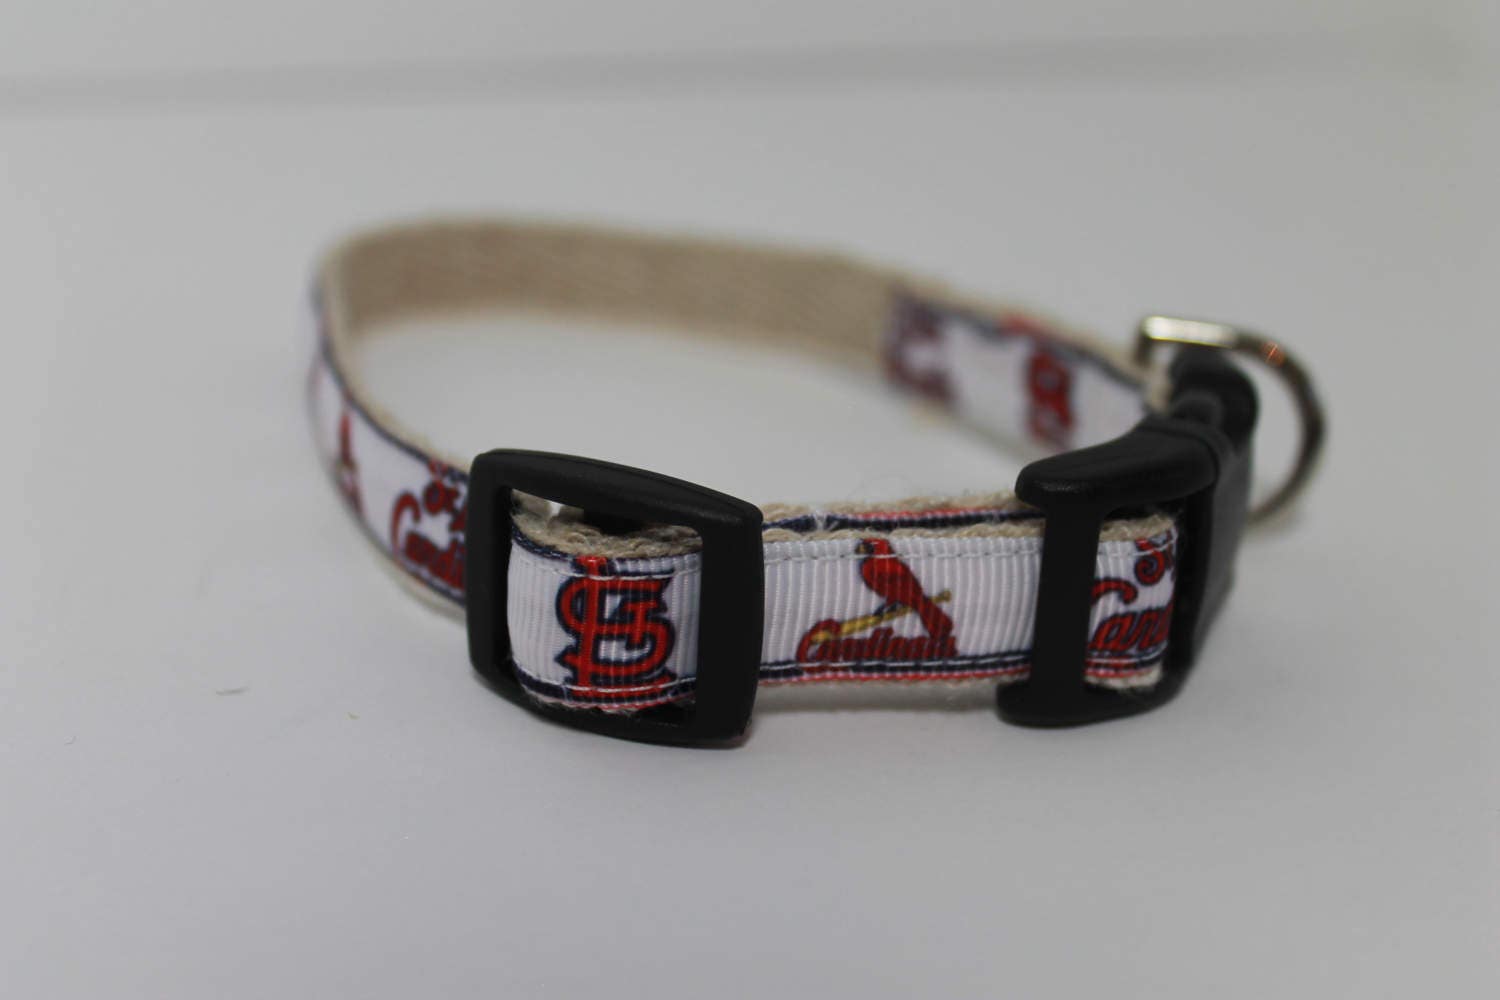 Pink St. Louis Cardinals Handmade Dog Collar - XS — The Dog Collar